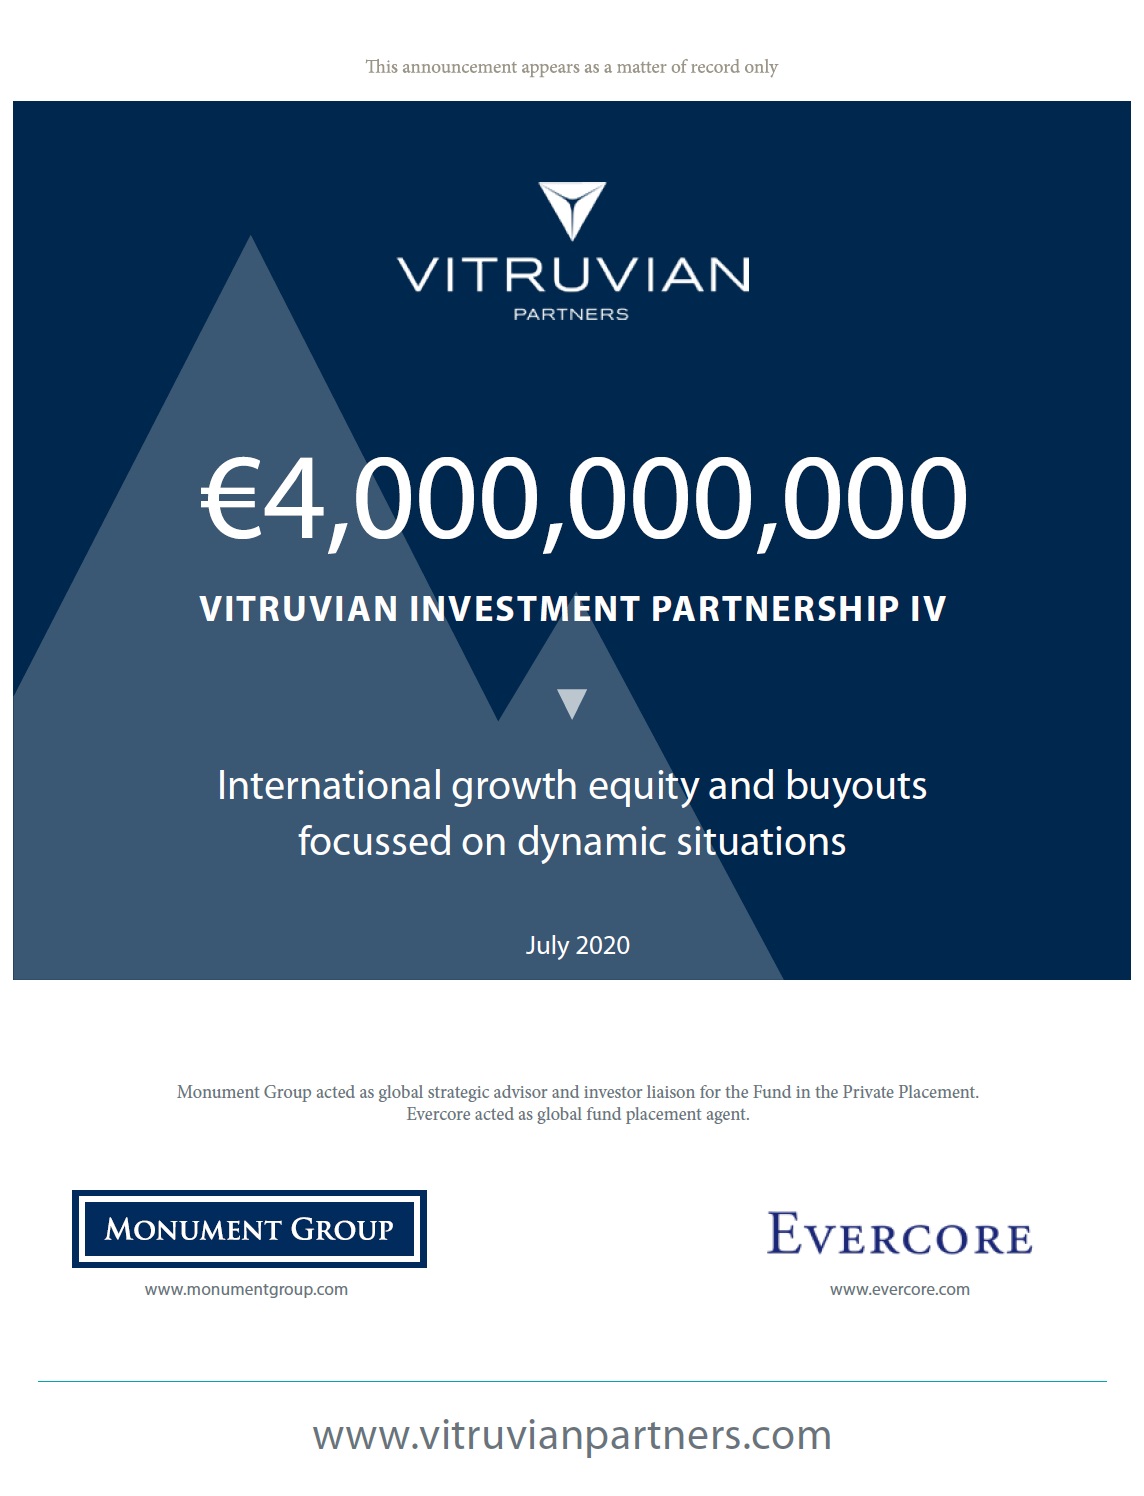 Vitruvian Investment Partnership IV